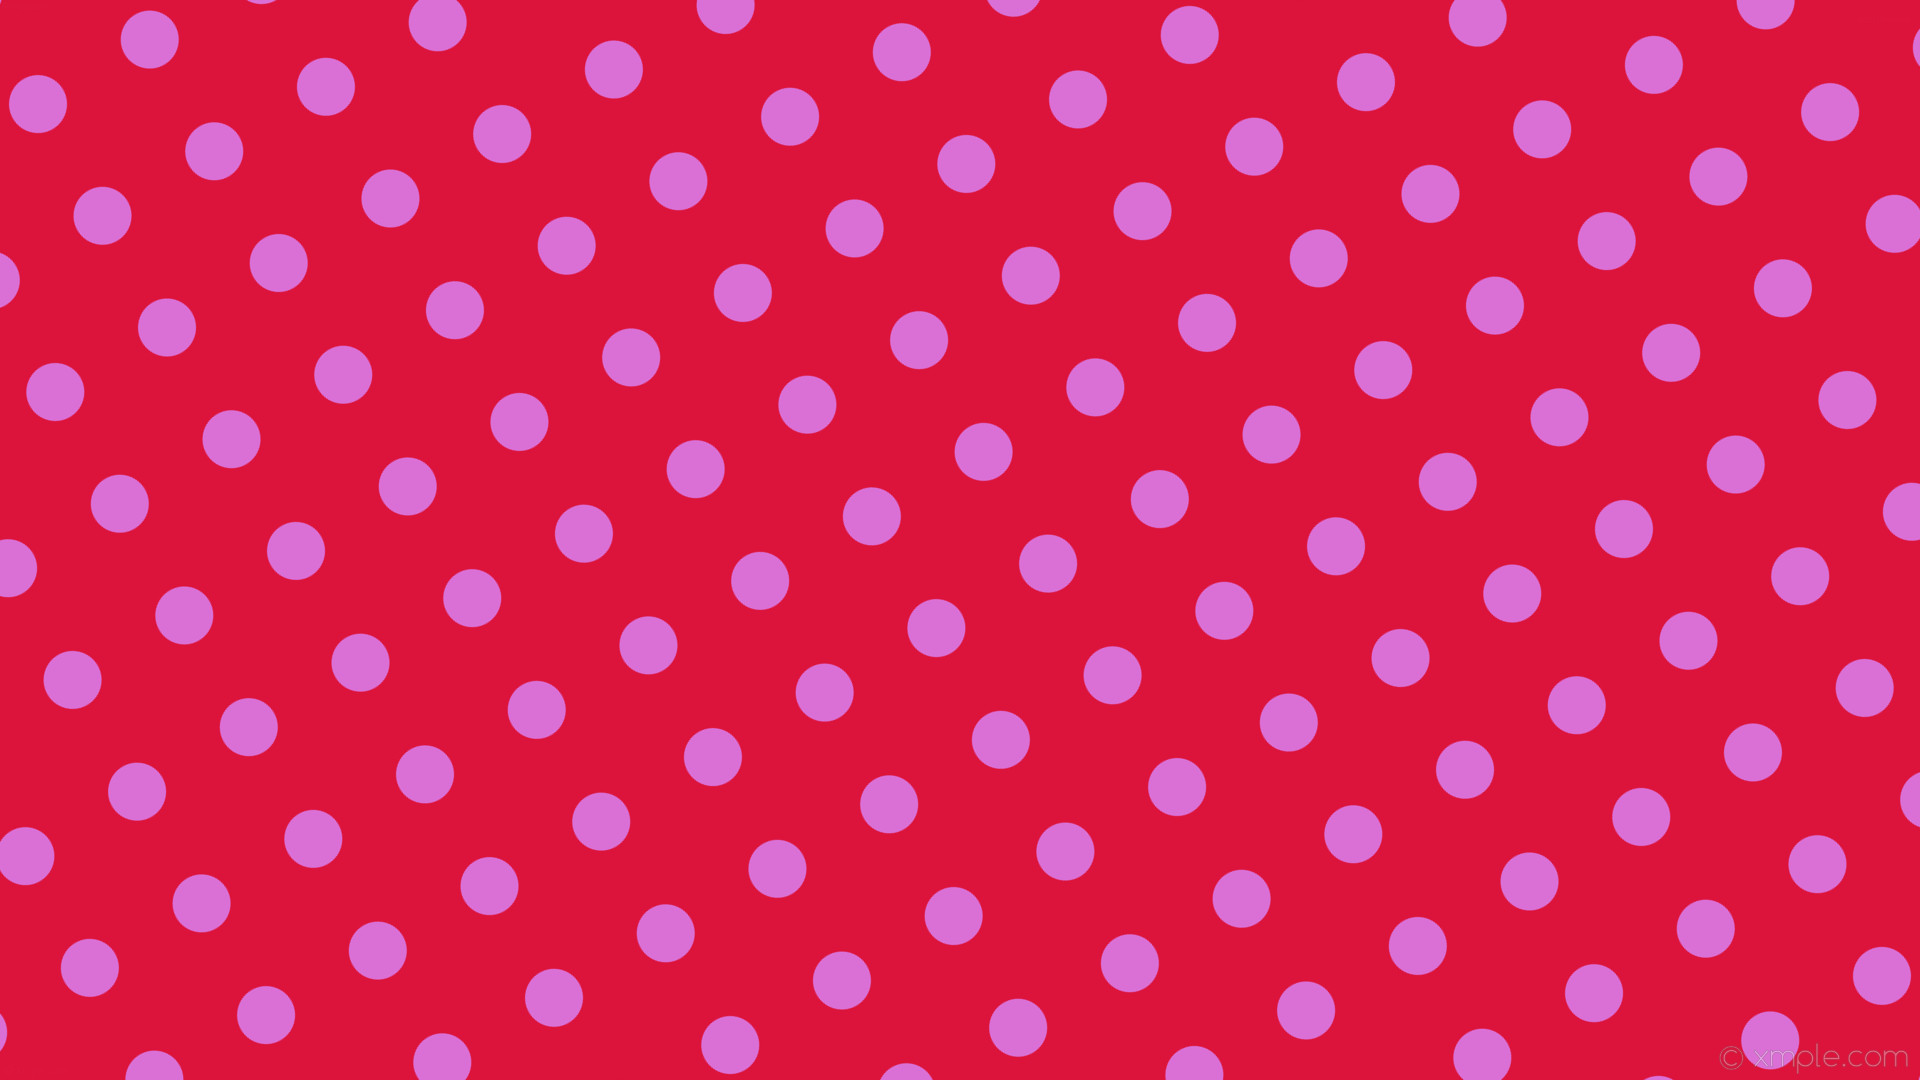 1920x1080 wallpaper red polka dots spots purple crimson orchid #dc143c #da70d6 30Â°  58px 129px